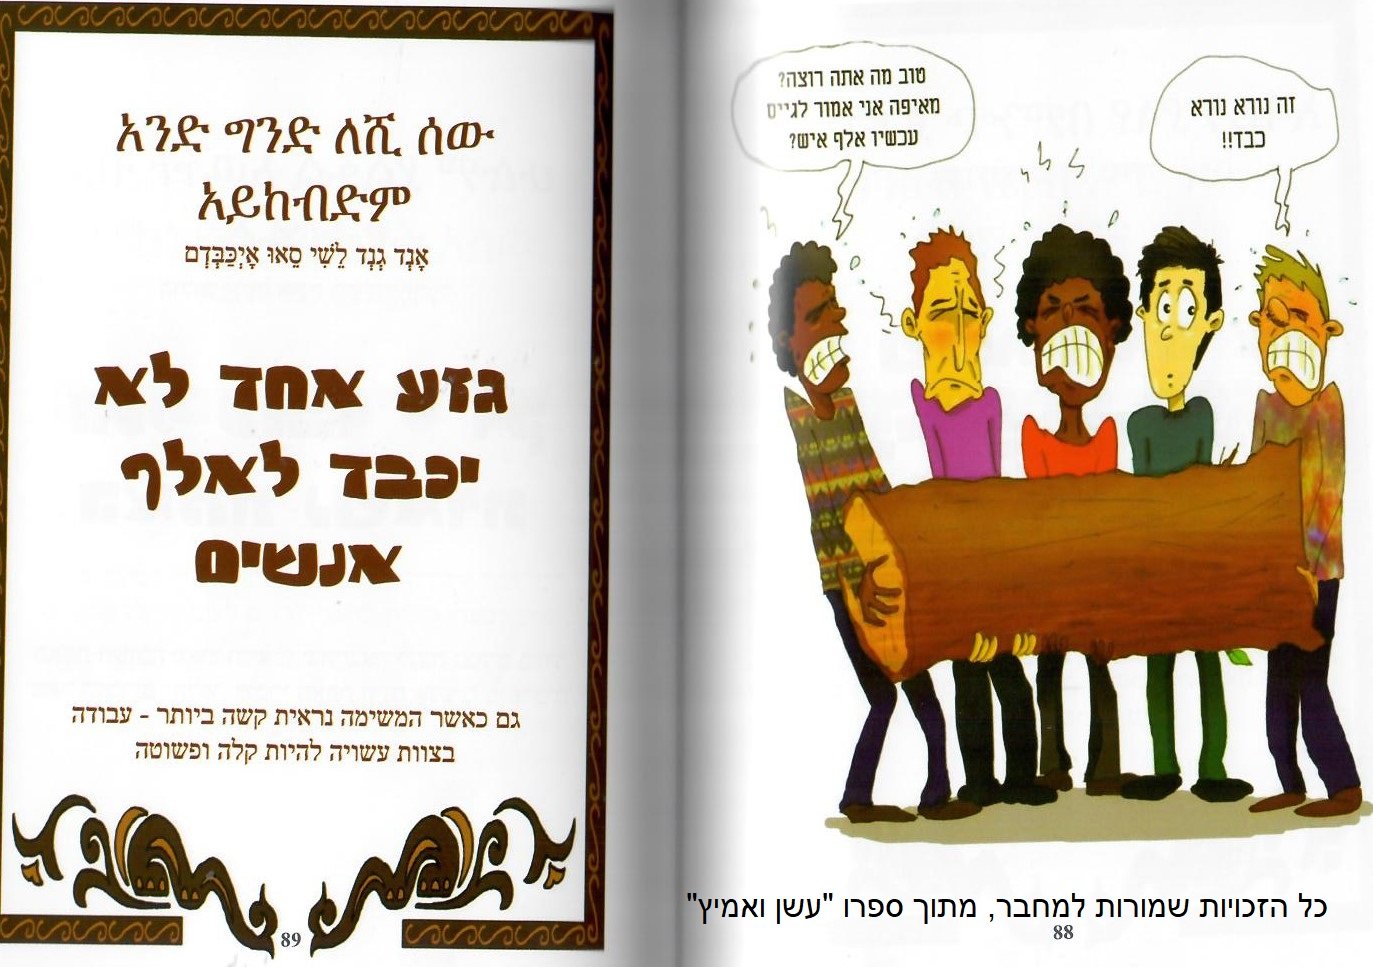 אמרות ופתגמים מתרבות יהודי אתיופיה בכלי גוגל Google forms/רשת דרכא